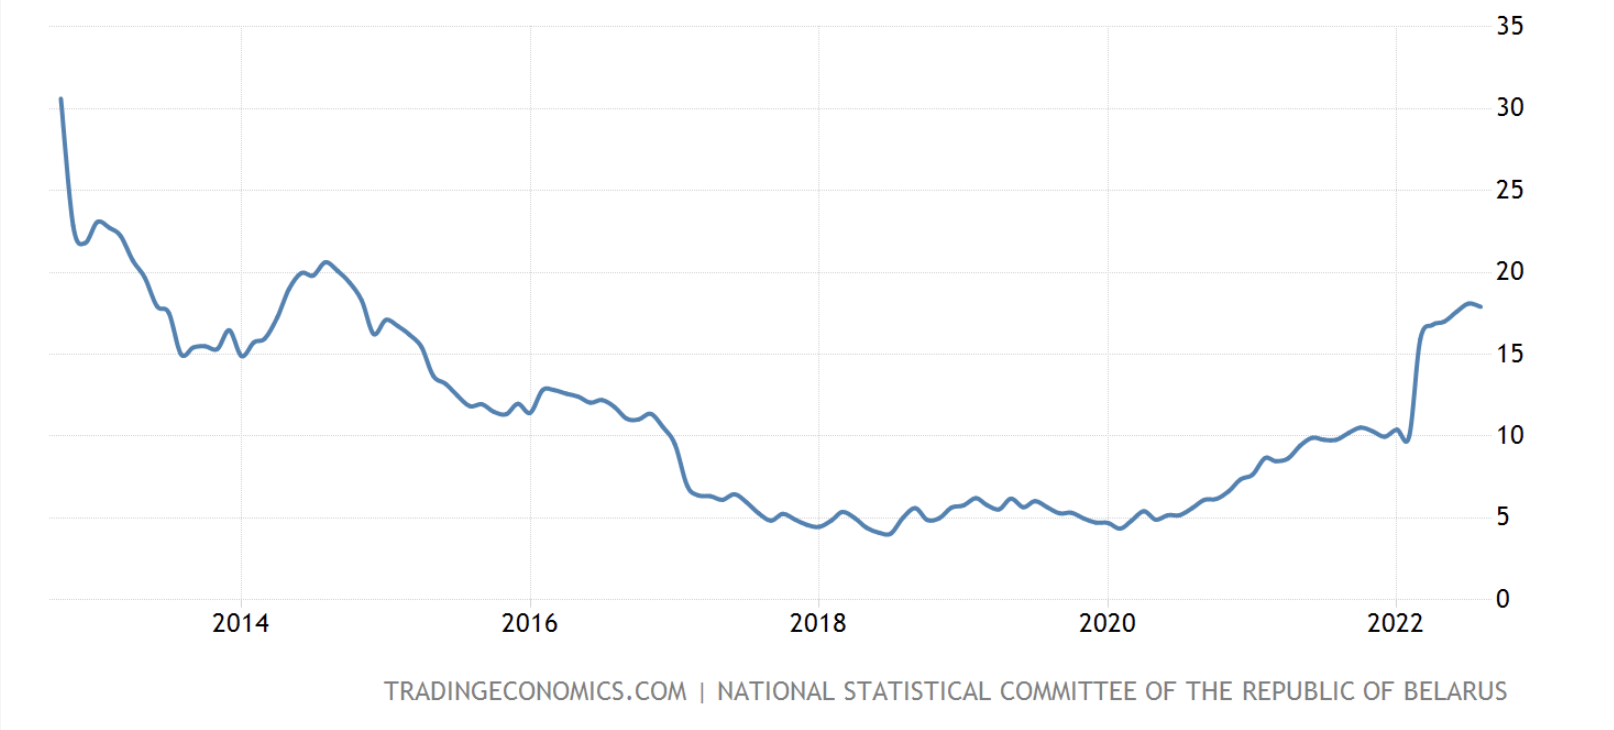 שיעור האינפלציה בבלארוס, אוקטובר 2022